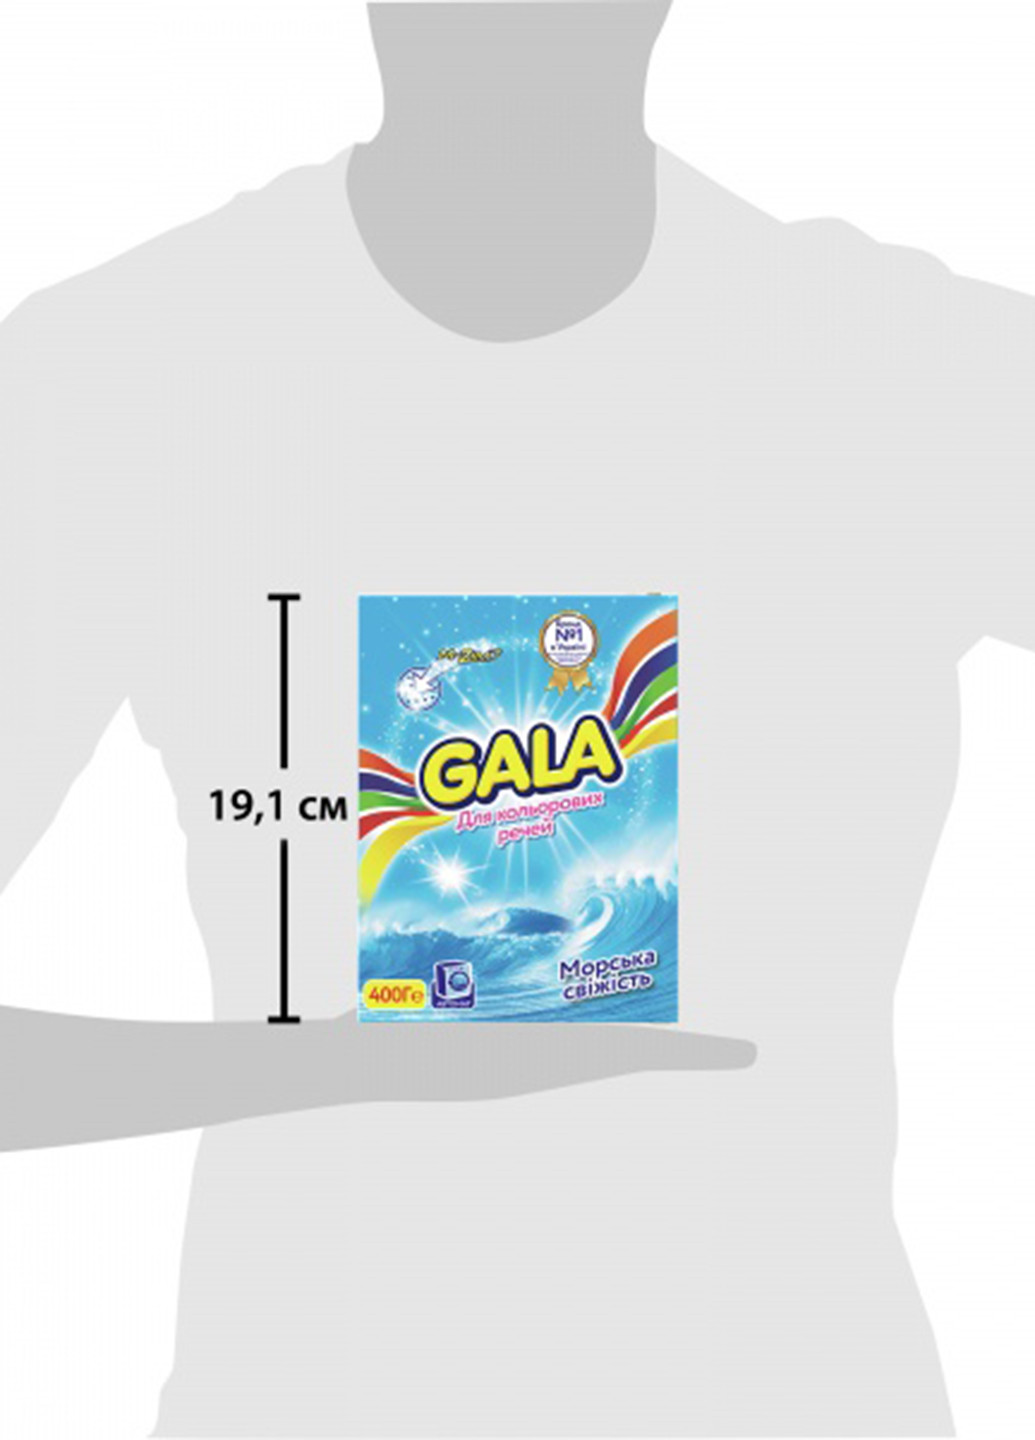 Порошок для цветных тканей Морская свежесть, 400 г Gala (132543255)